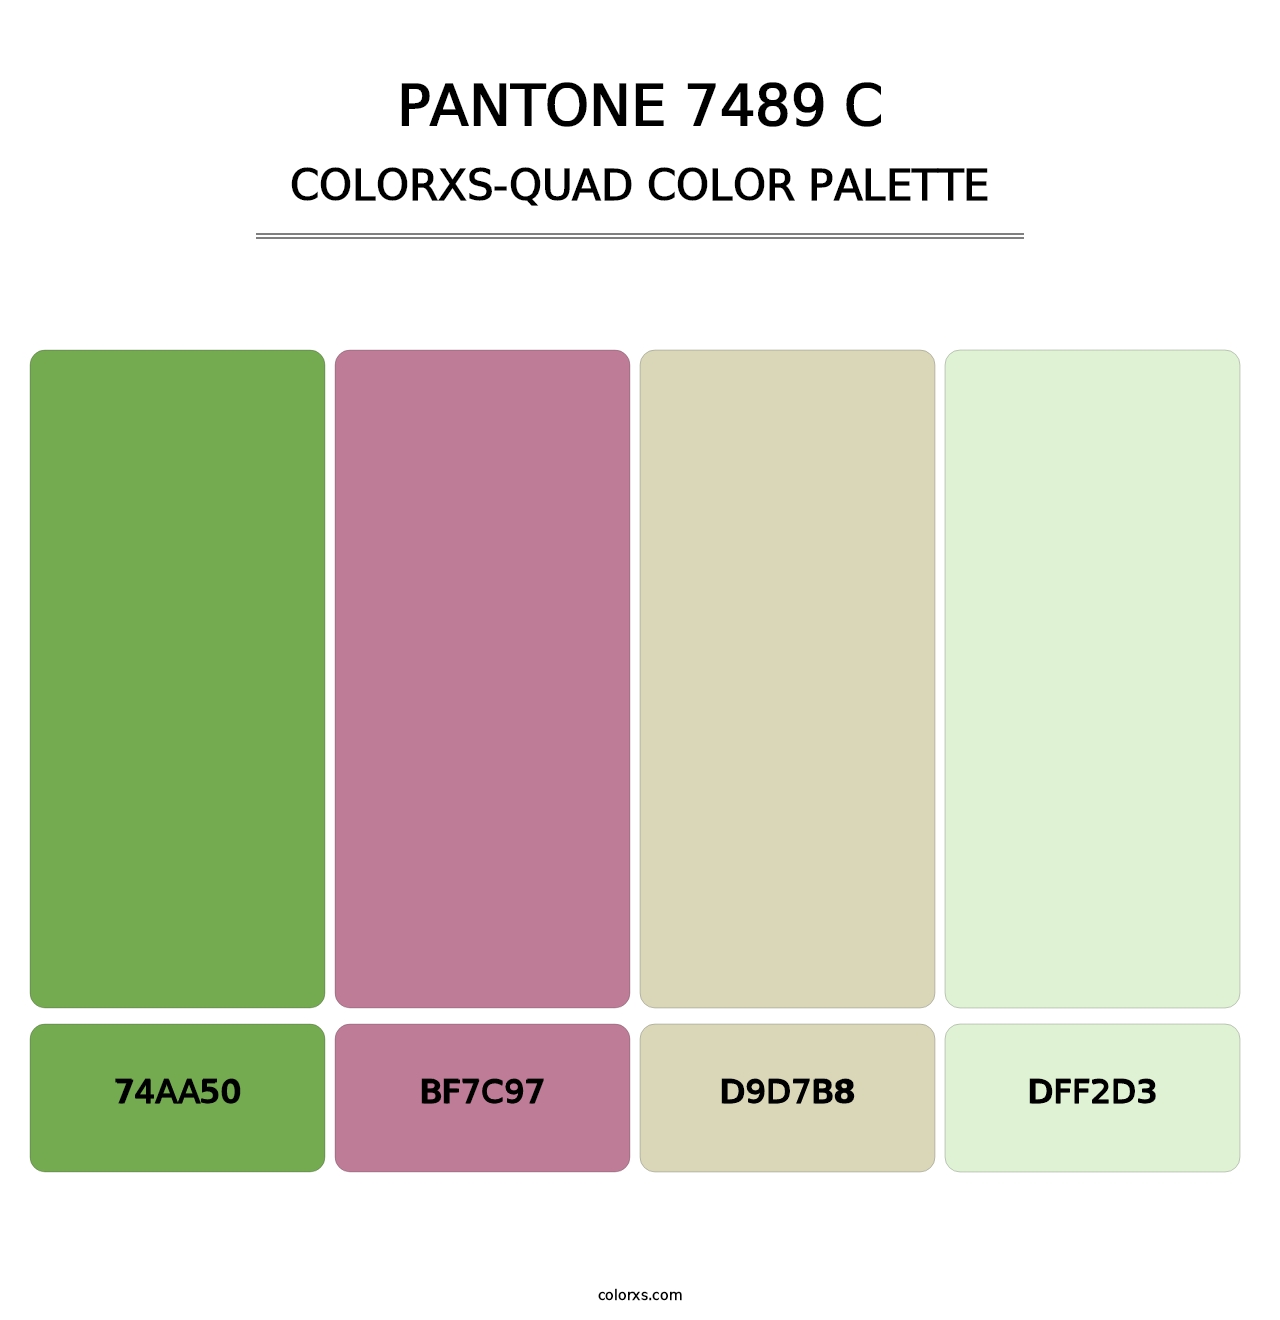 PANTONE 7489 C - Colorxs Quad Palette